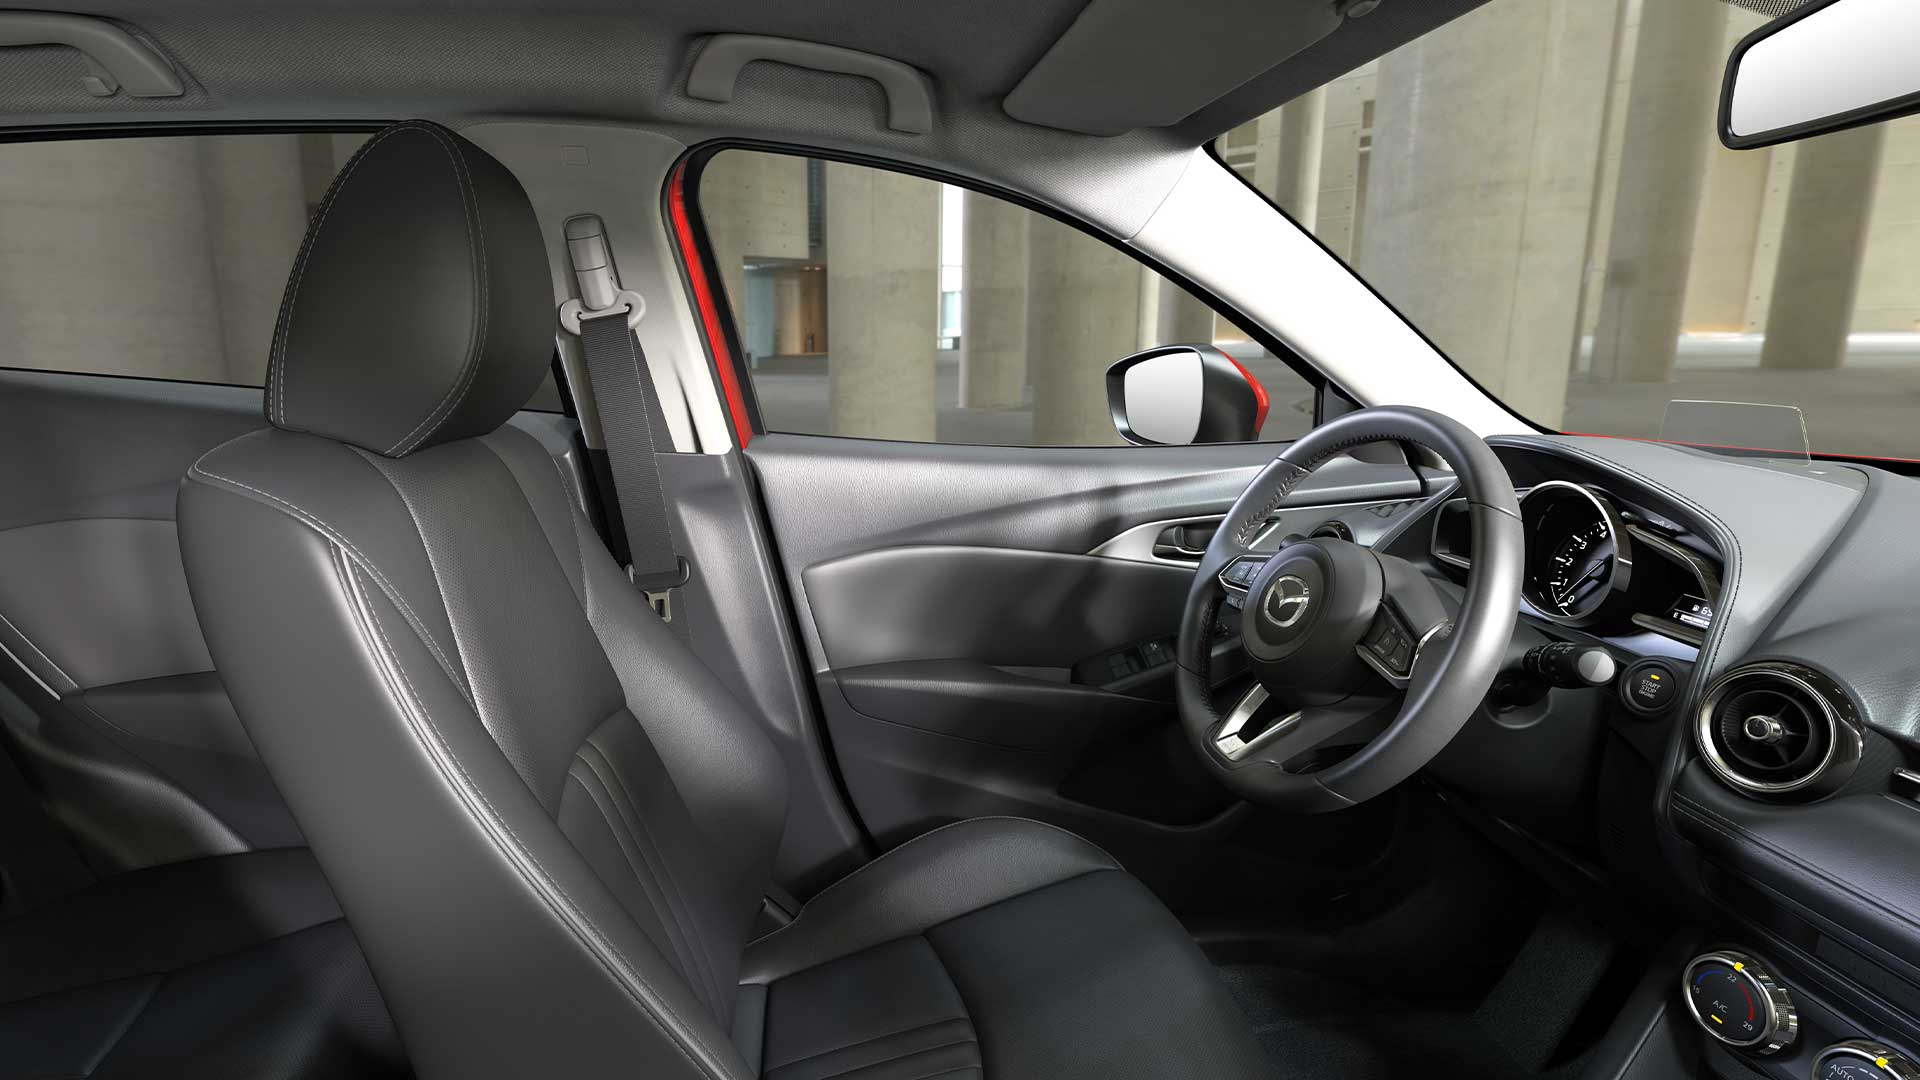 Conduce con estilo gracias a estos accesorios de  que transformarán  el interior de tu coche